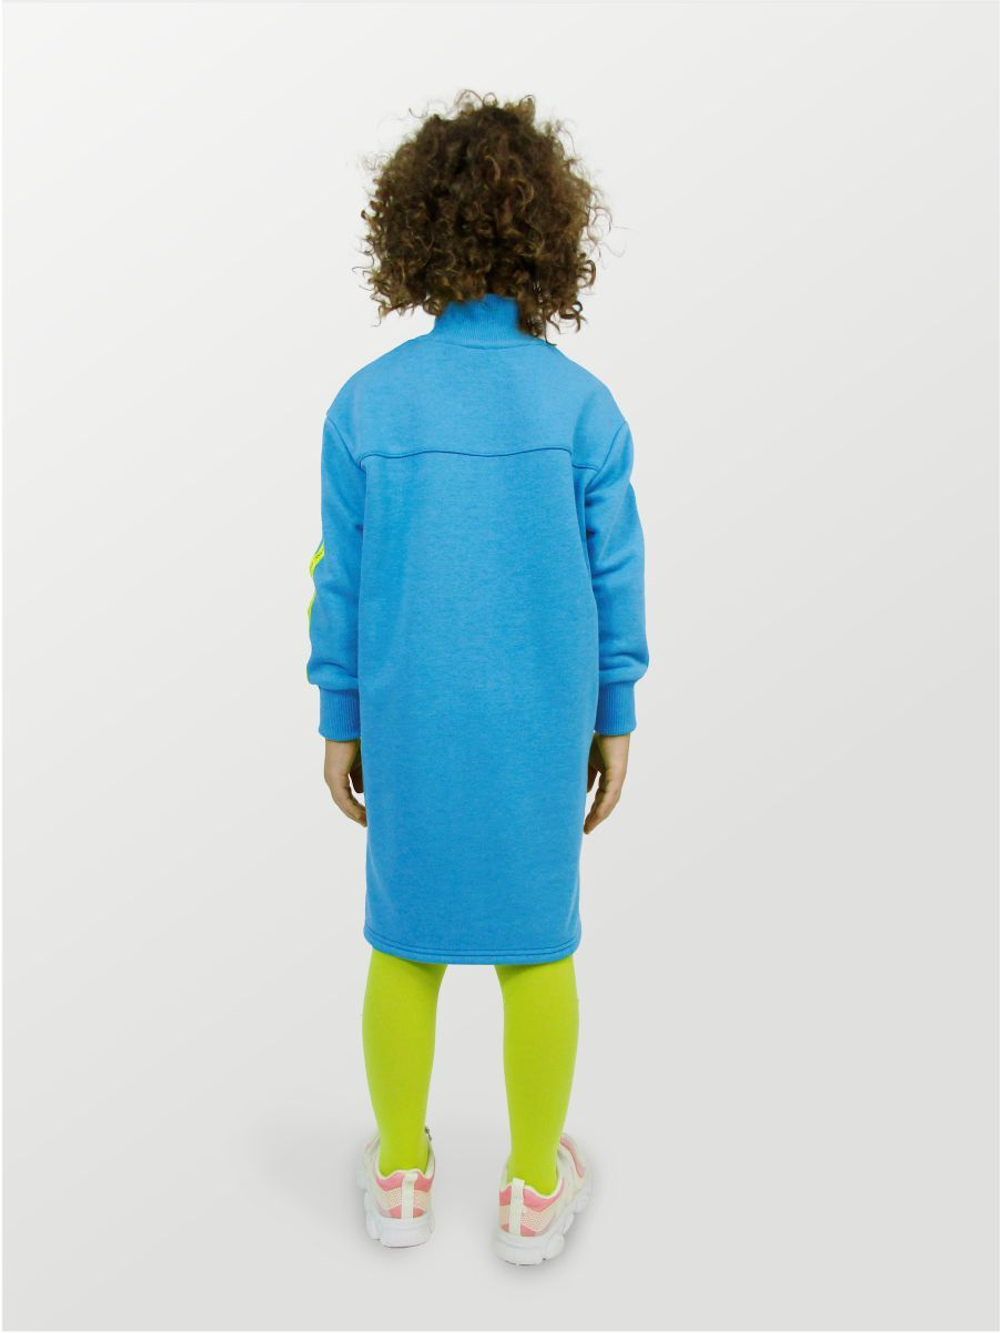 Платье для девочки, модель №1, рост 98 см, голубое